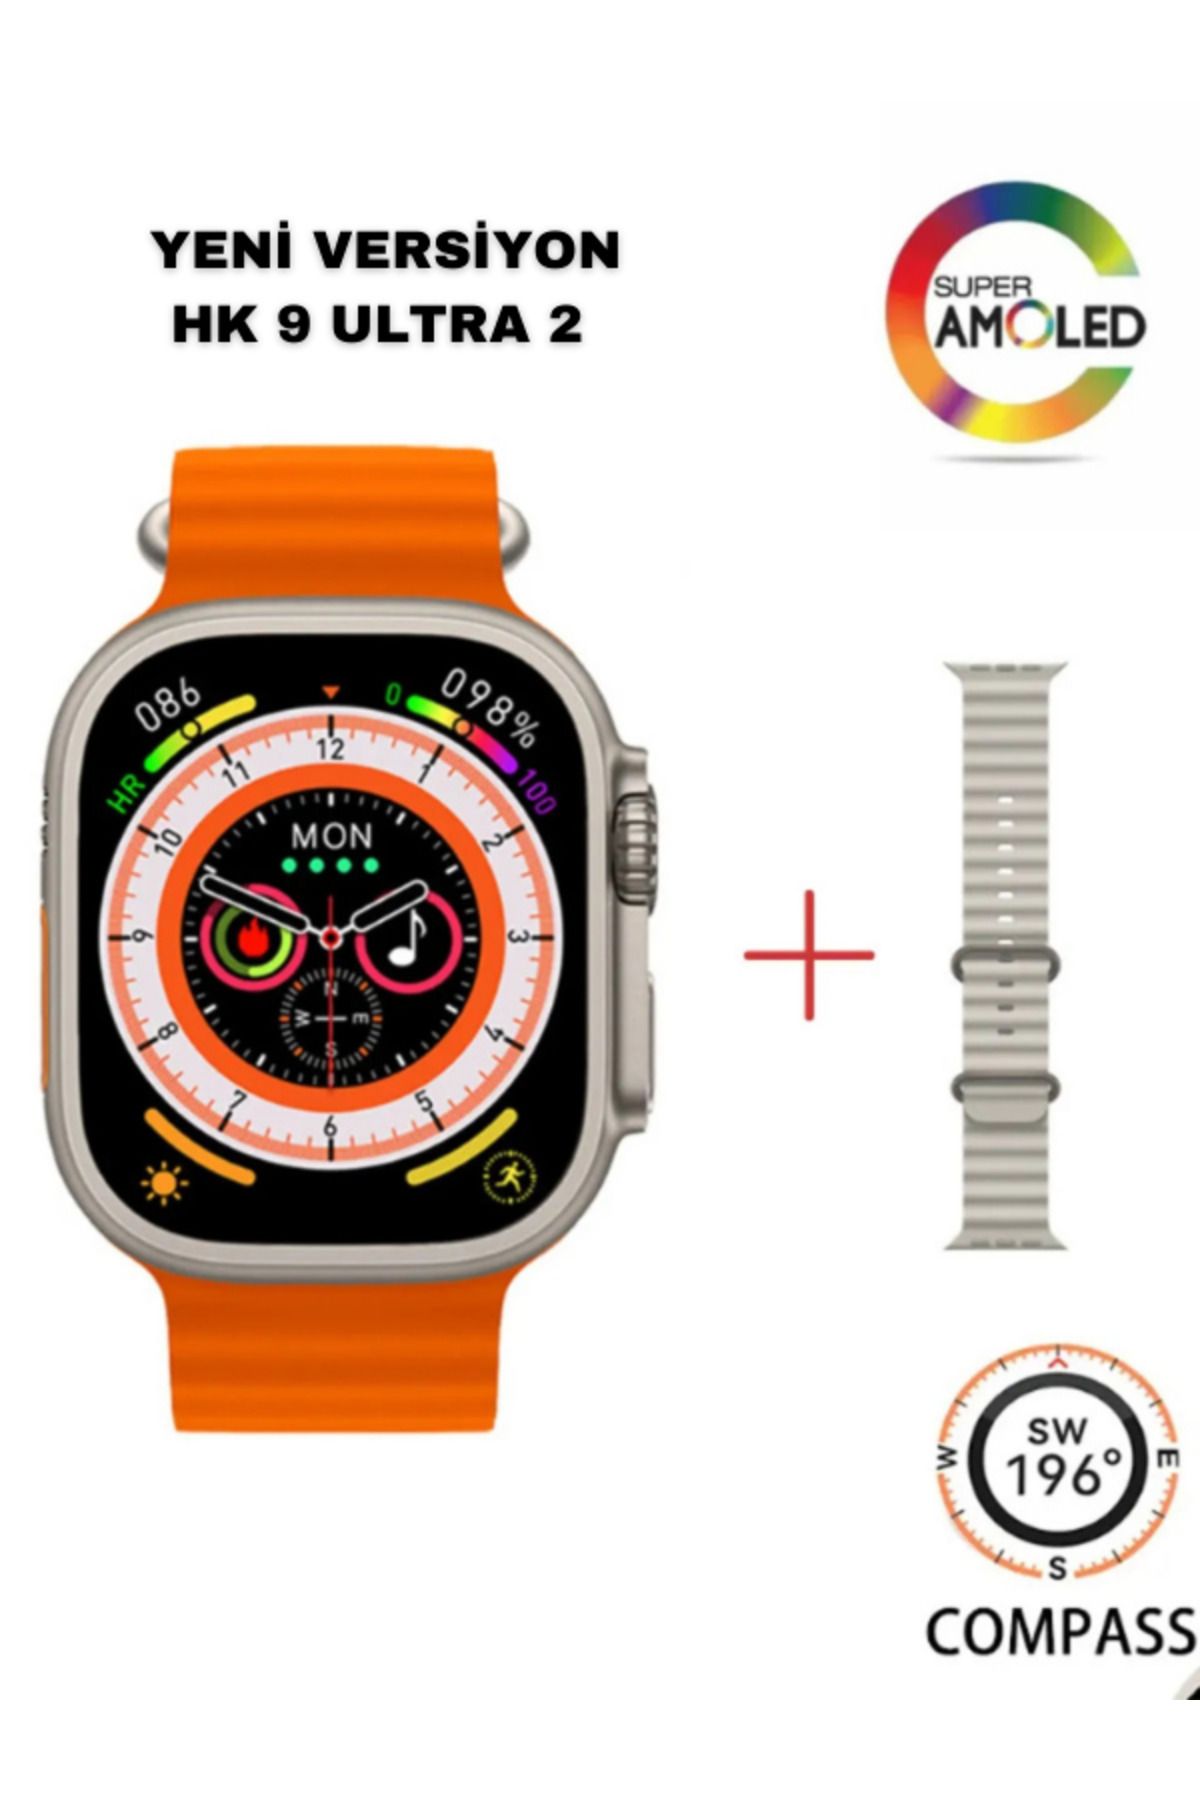 Hk9 ultra 2 smart watch